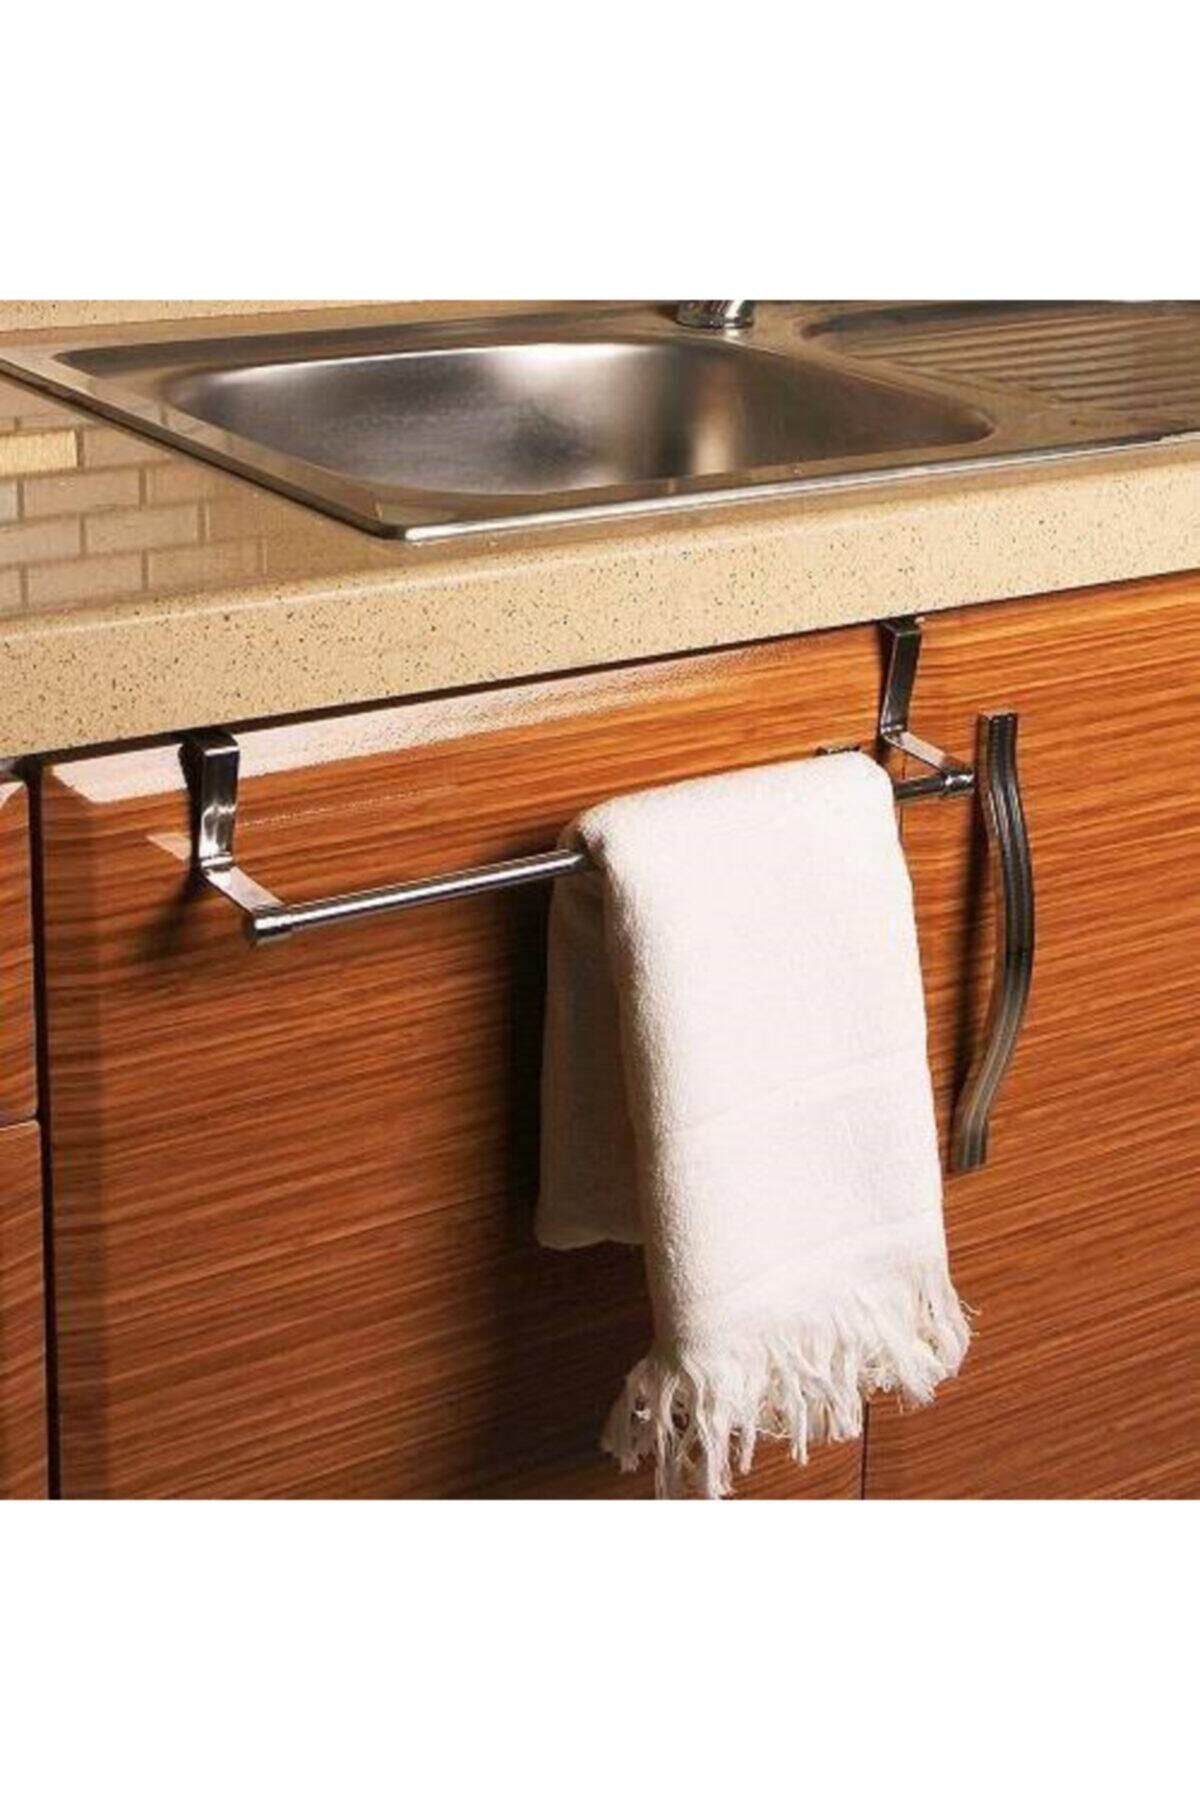 onbi10 Askılık Metal Mutfak Banyo Dolap Kapağına Takılan Krom Kaplı Paslanmaz Kırılmaz Havlu Askılığı